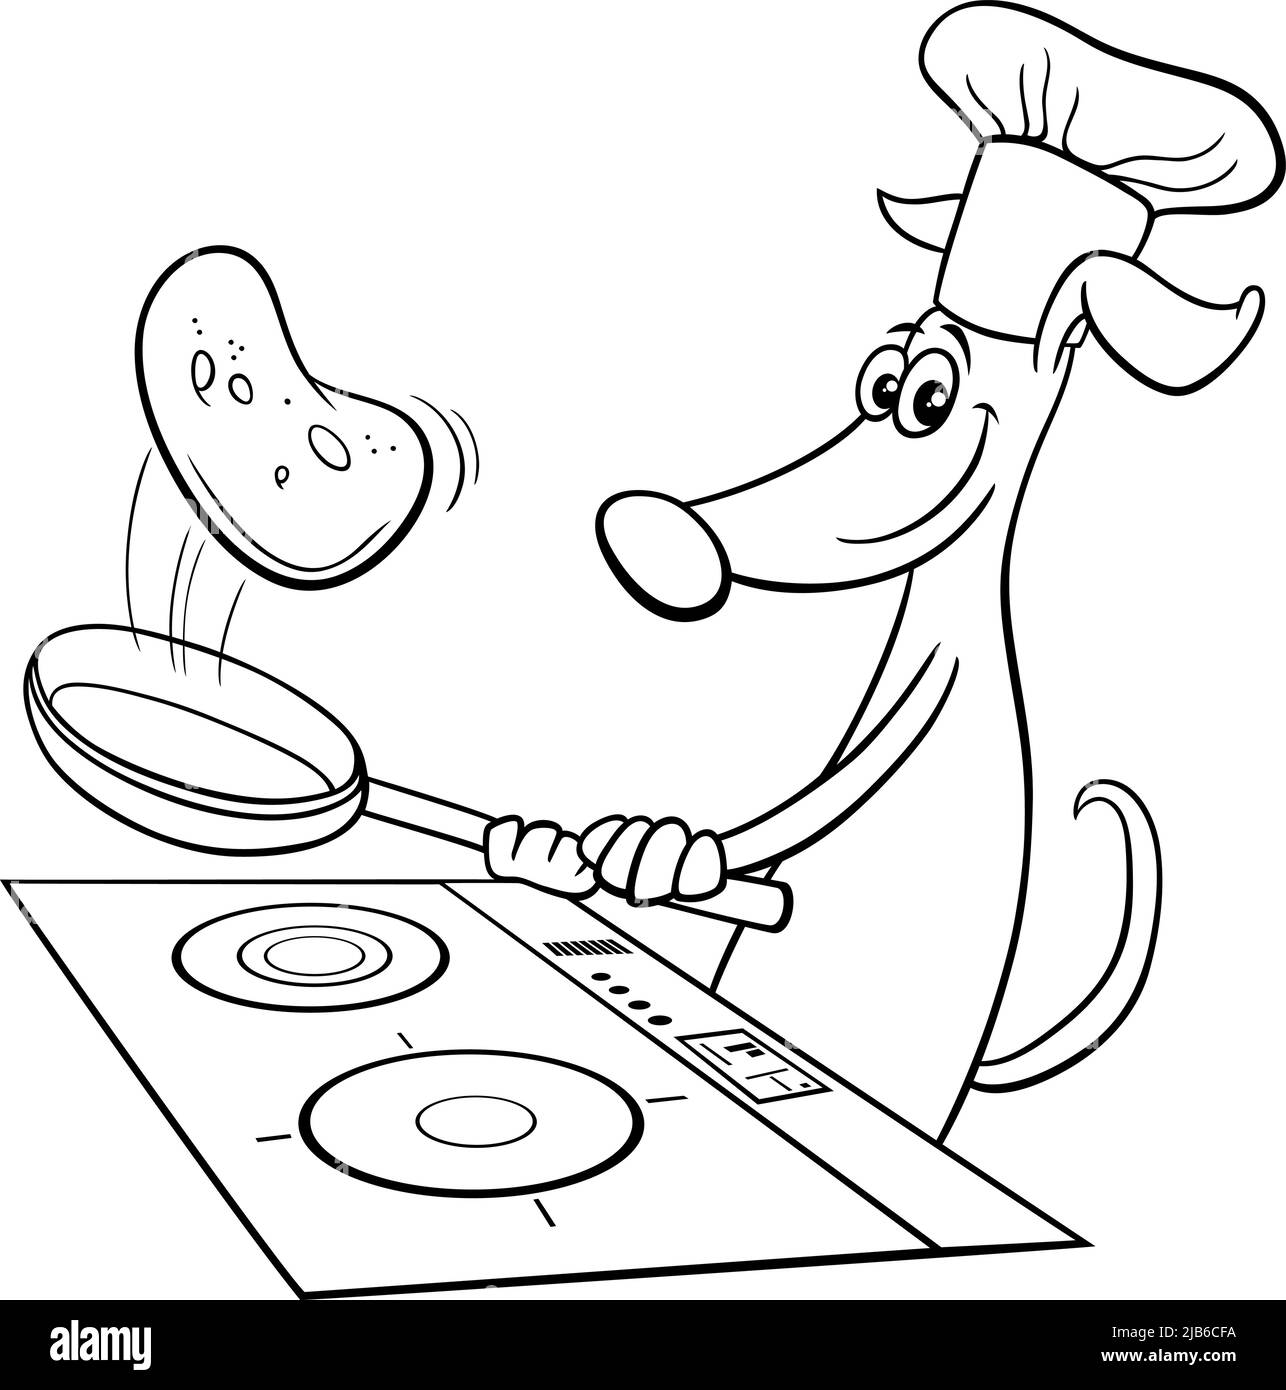 Ilustración de dibujos animados en blanco y negro de carácter animal de perro gracioso que fríe tortitas página para colorear Ilustración del Vector